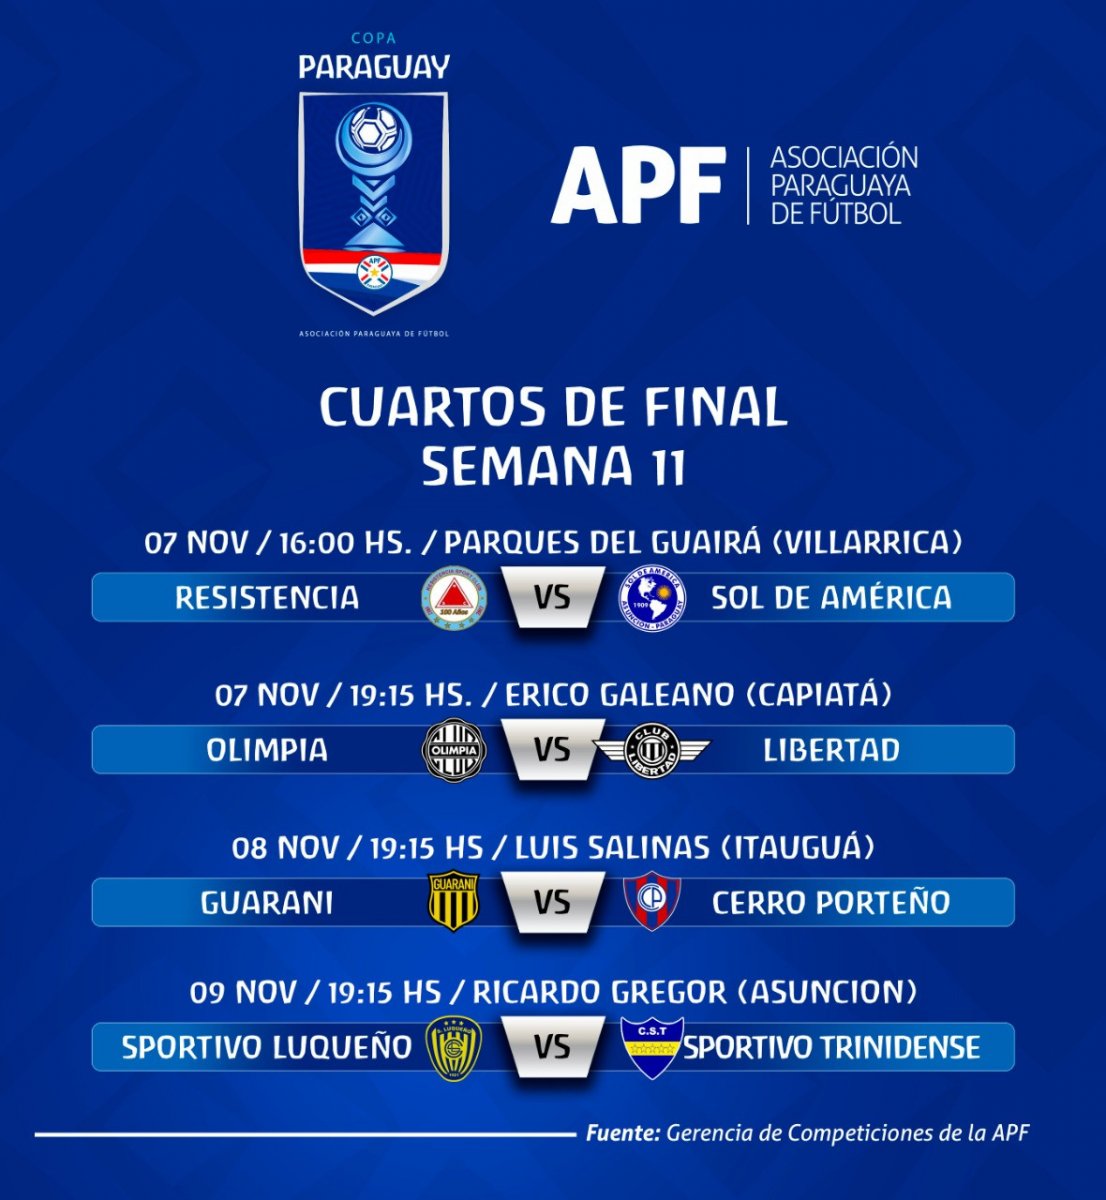 Versus / Copa Paraguay con calendario definido para Cuartos de Final